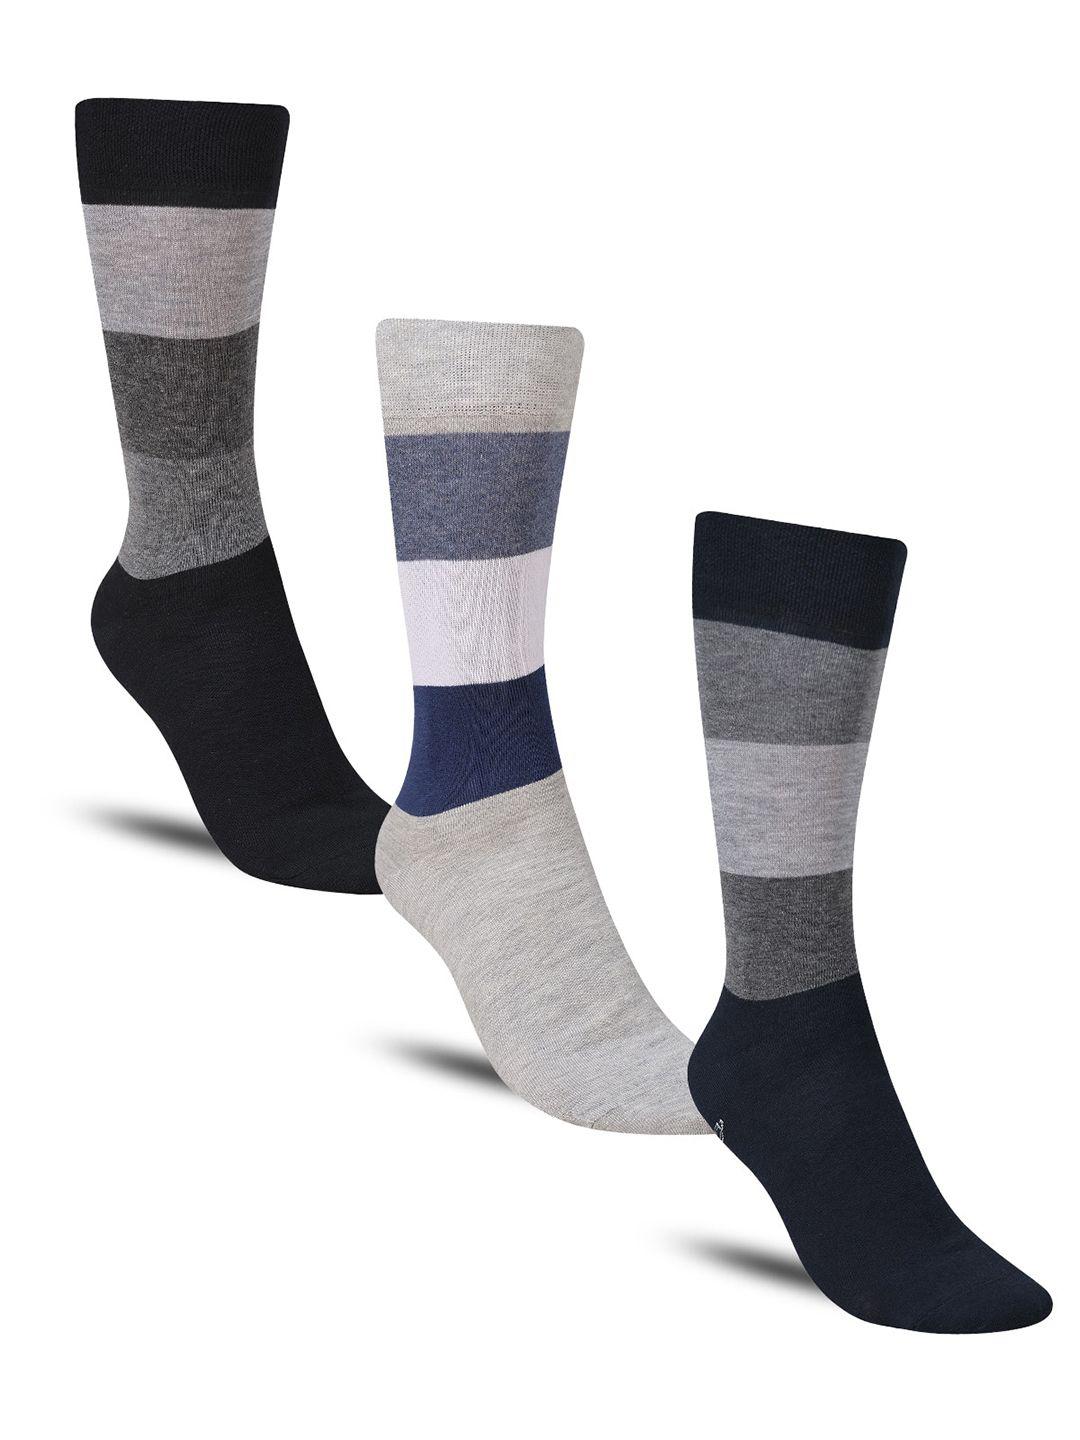 dollar socks men pack of 3 patterned cotton calf-length socks